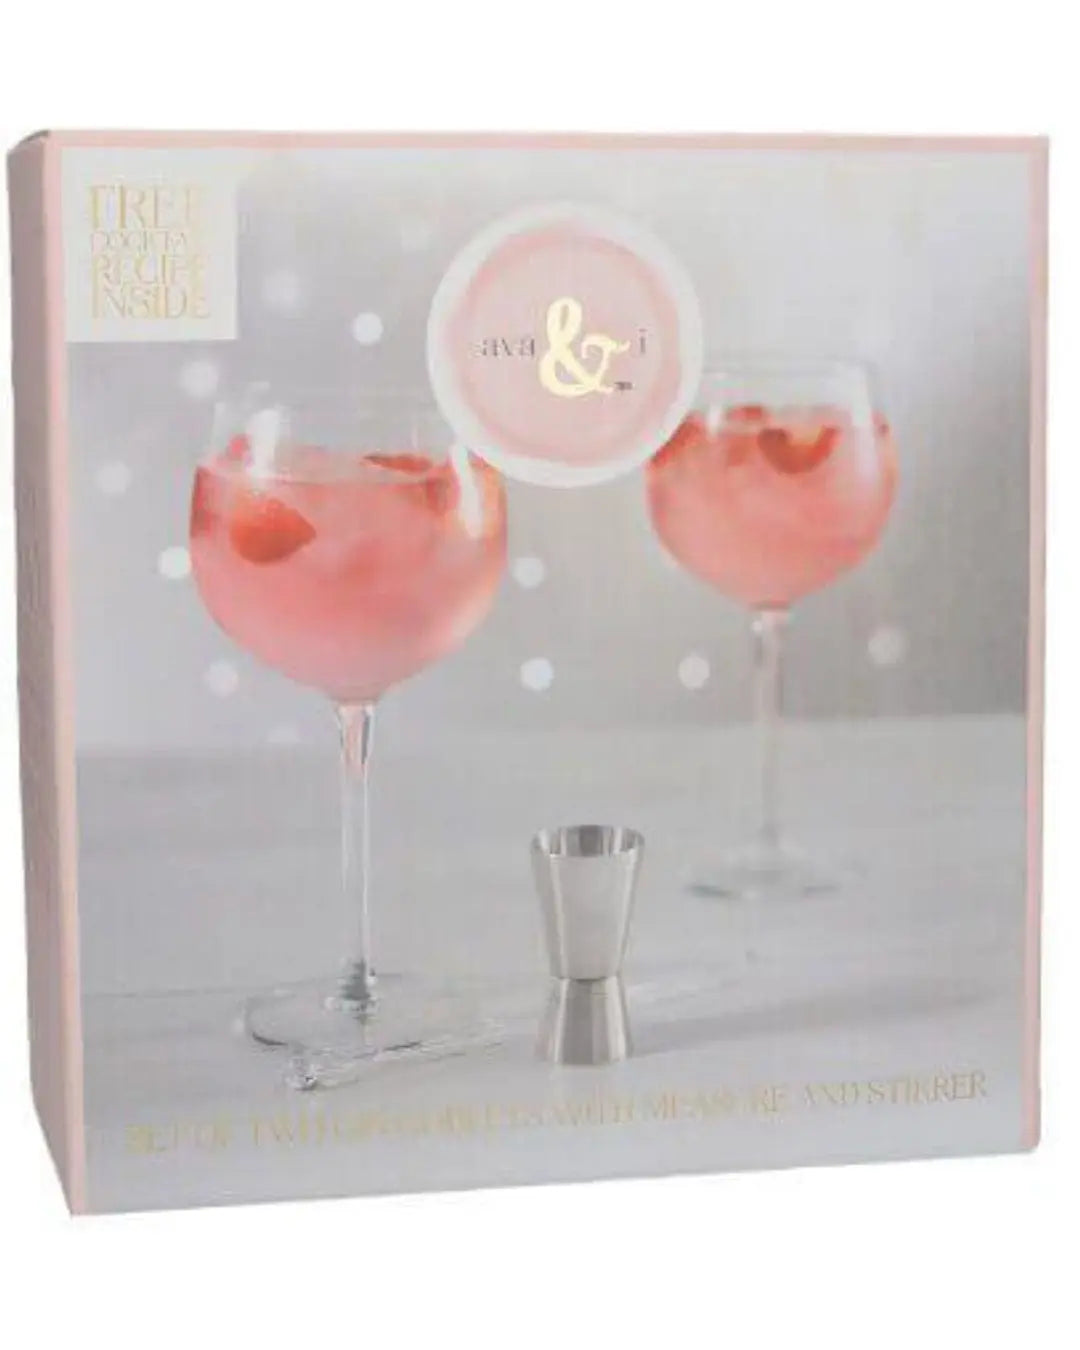 Ava & I Gin Goblet Set of 2 Balloon Glasses Tableware 5050993320994